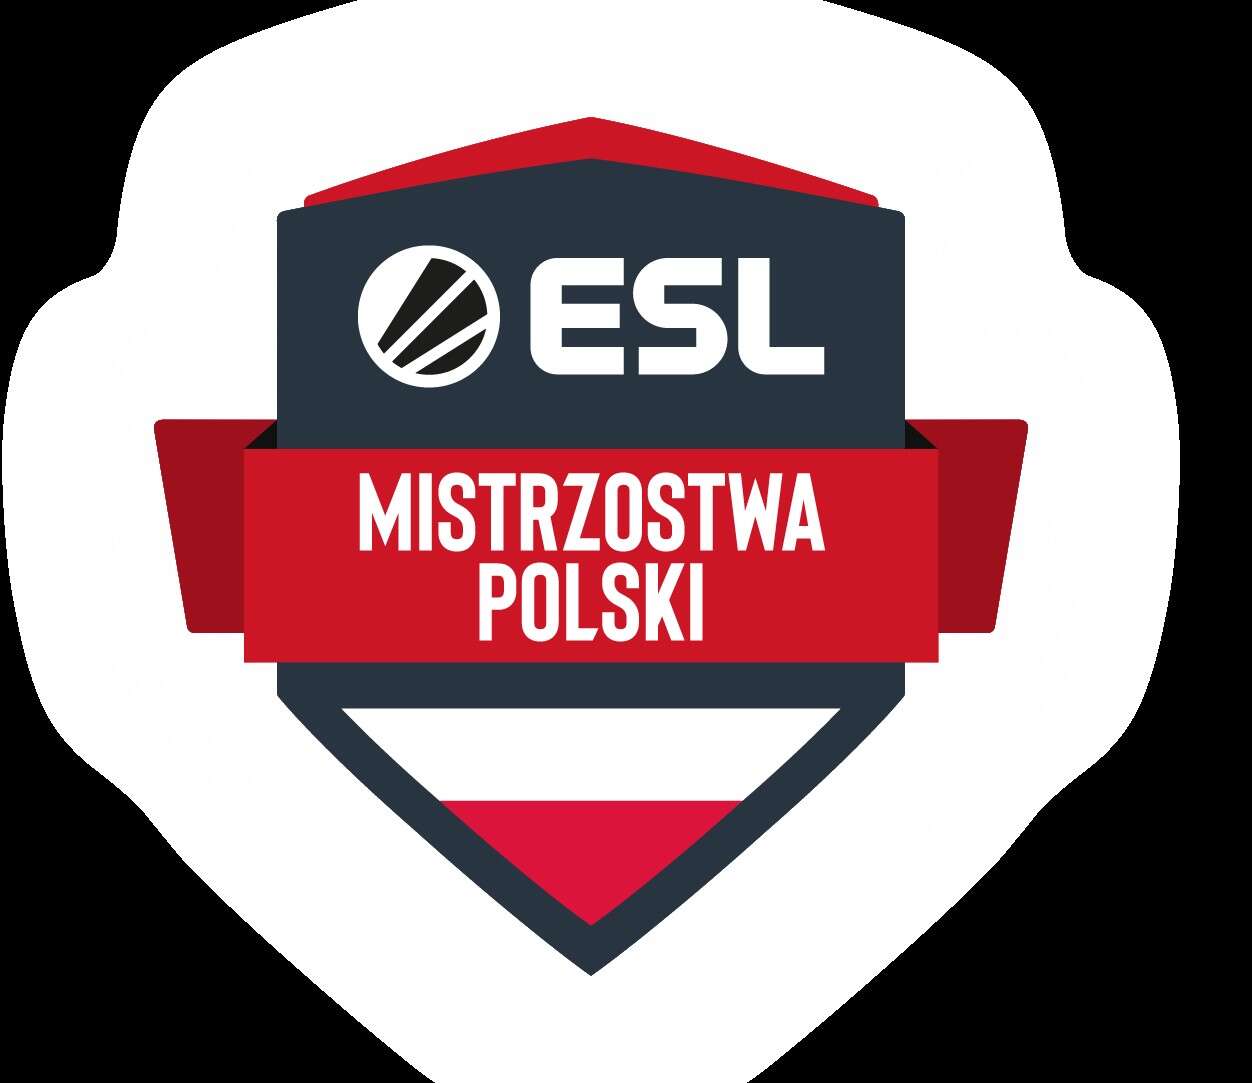 ESL Mistrzostwa Polski, jesień ESL Mistrzostwa Polski, jesień 2019 ESL Mistrzostwa Polski, 2019 ESL Mistrzostwa Polski